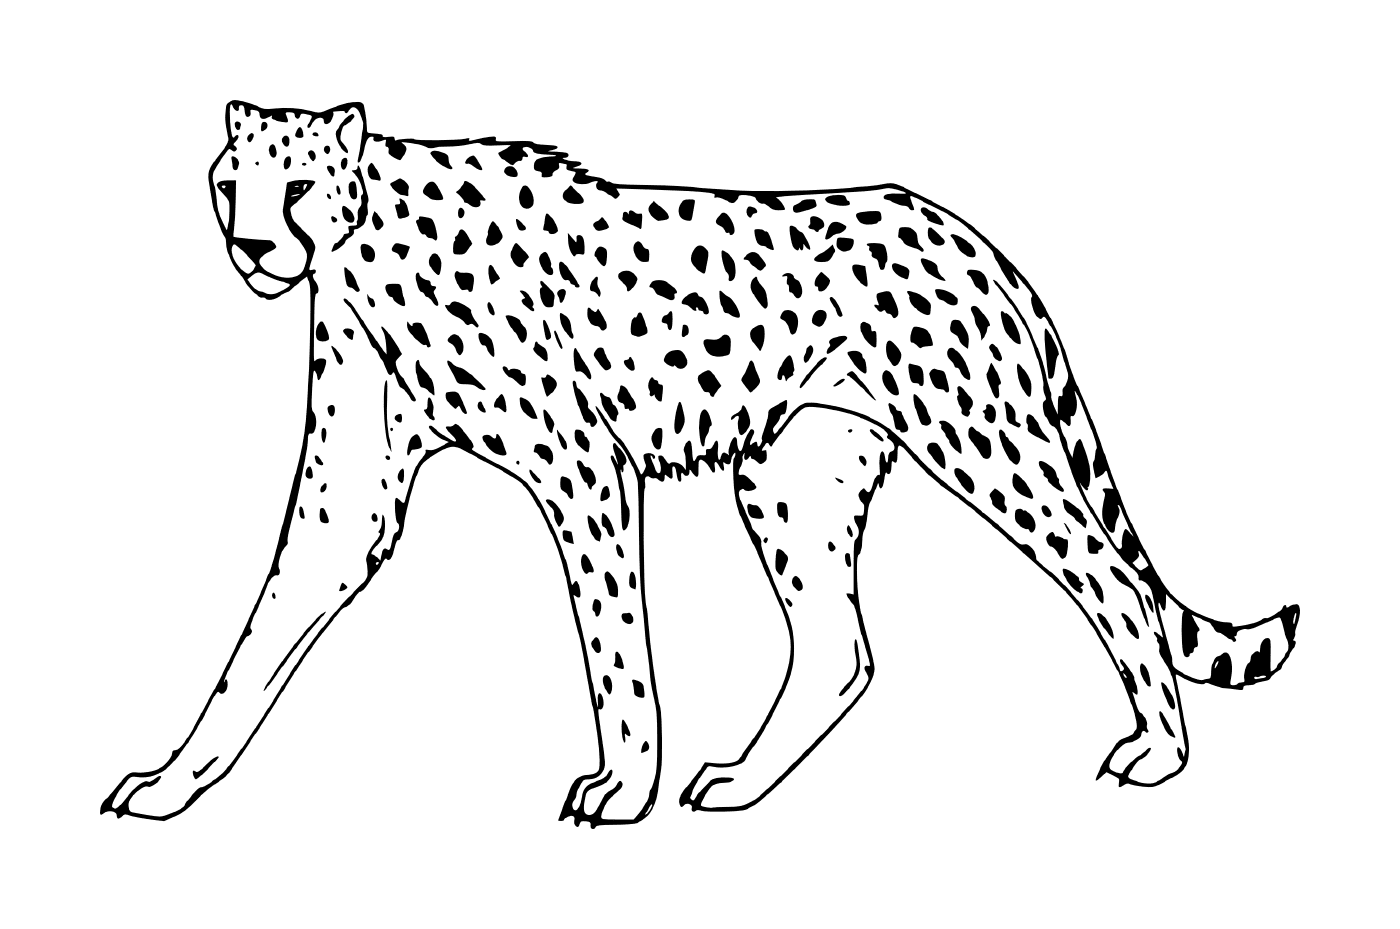  a cheetah walking 